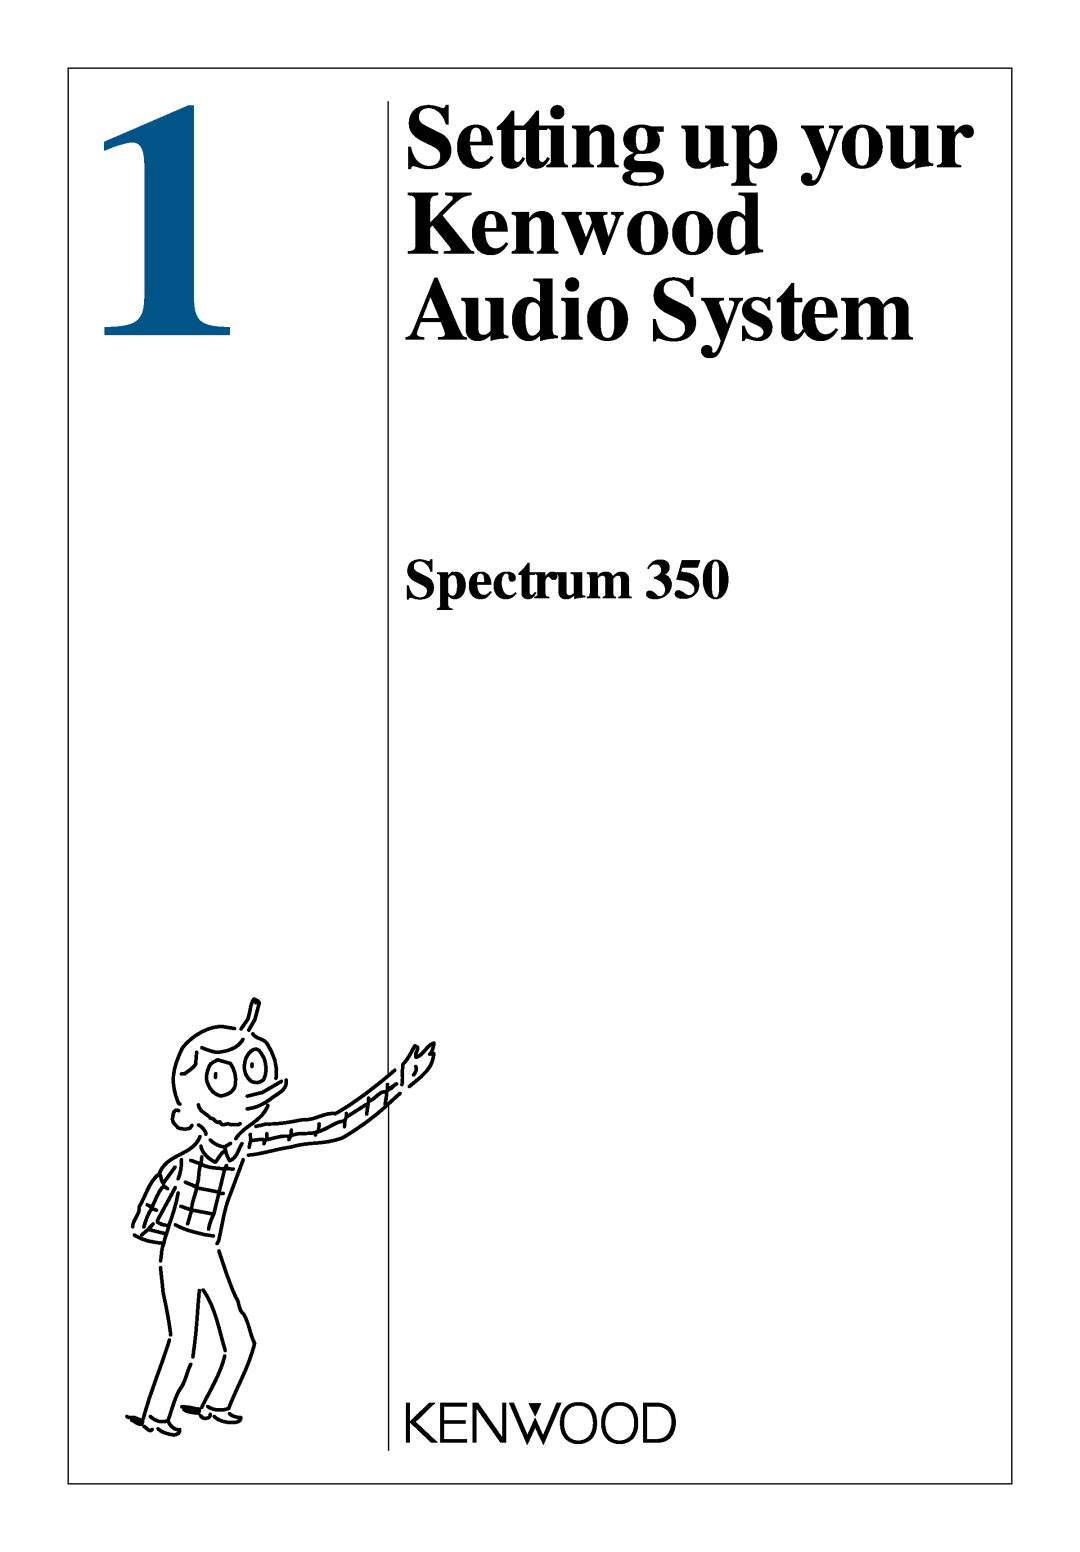 Kenwood 350 manual Setting up your Kenwood Audio System, Spectrum 